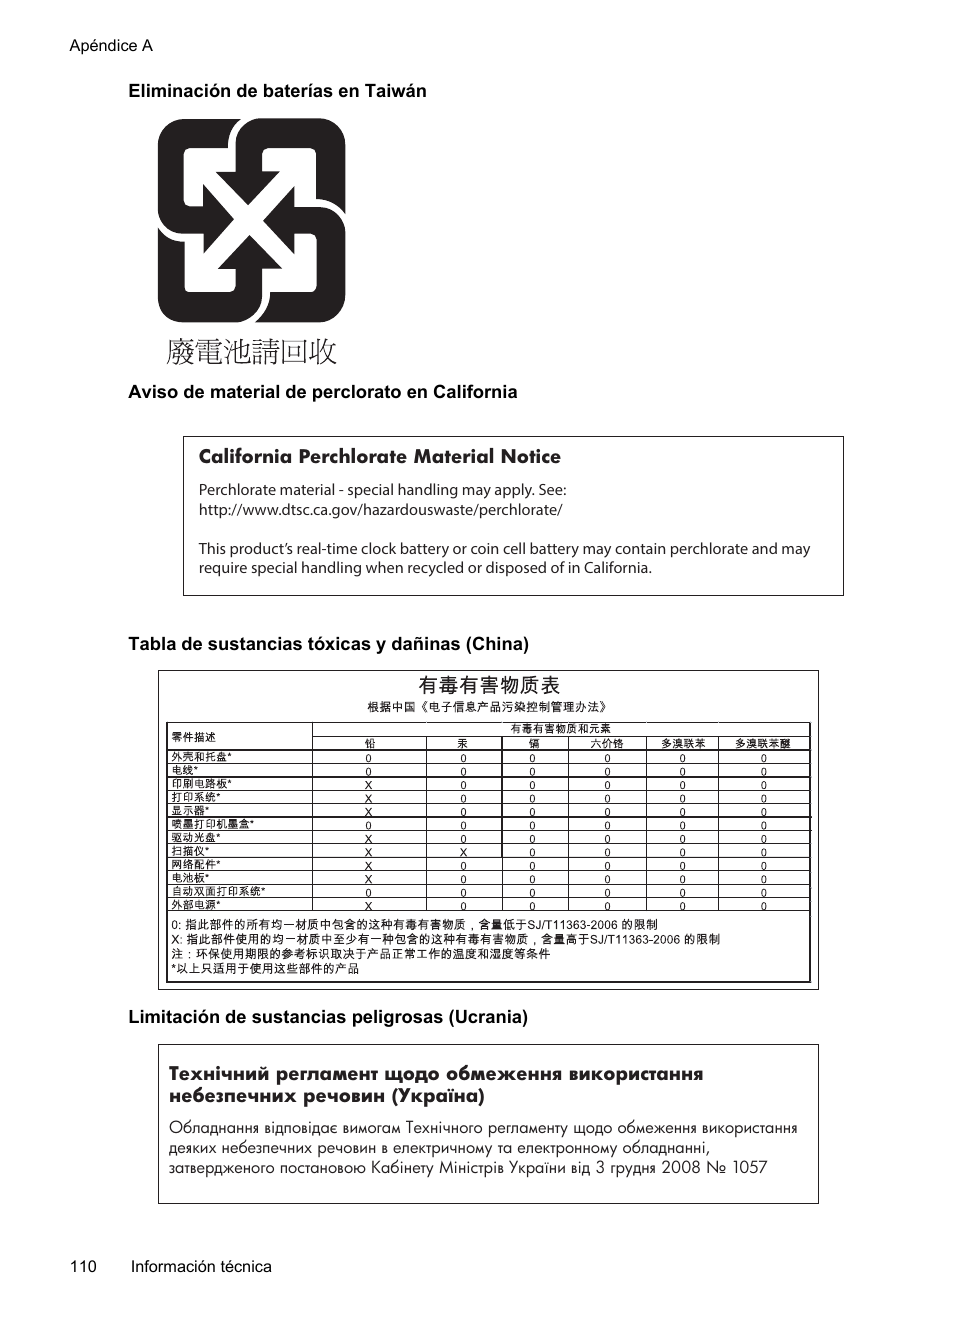 Eliminación de baterías en taiwán, Aviso de material de perclorato en california, Tabla de sustancias tóxicas y dañinas (china) | Limitación de sustancias peligrosas (ucrania) | HP Officejet 6100 Manual del usuario | Página 114 / 150